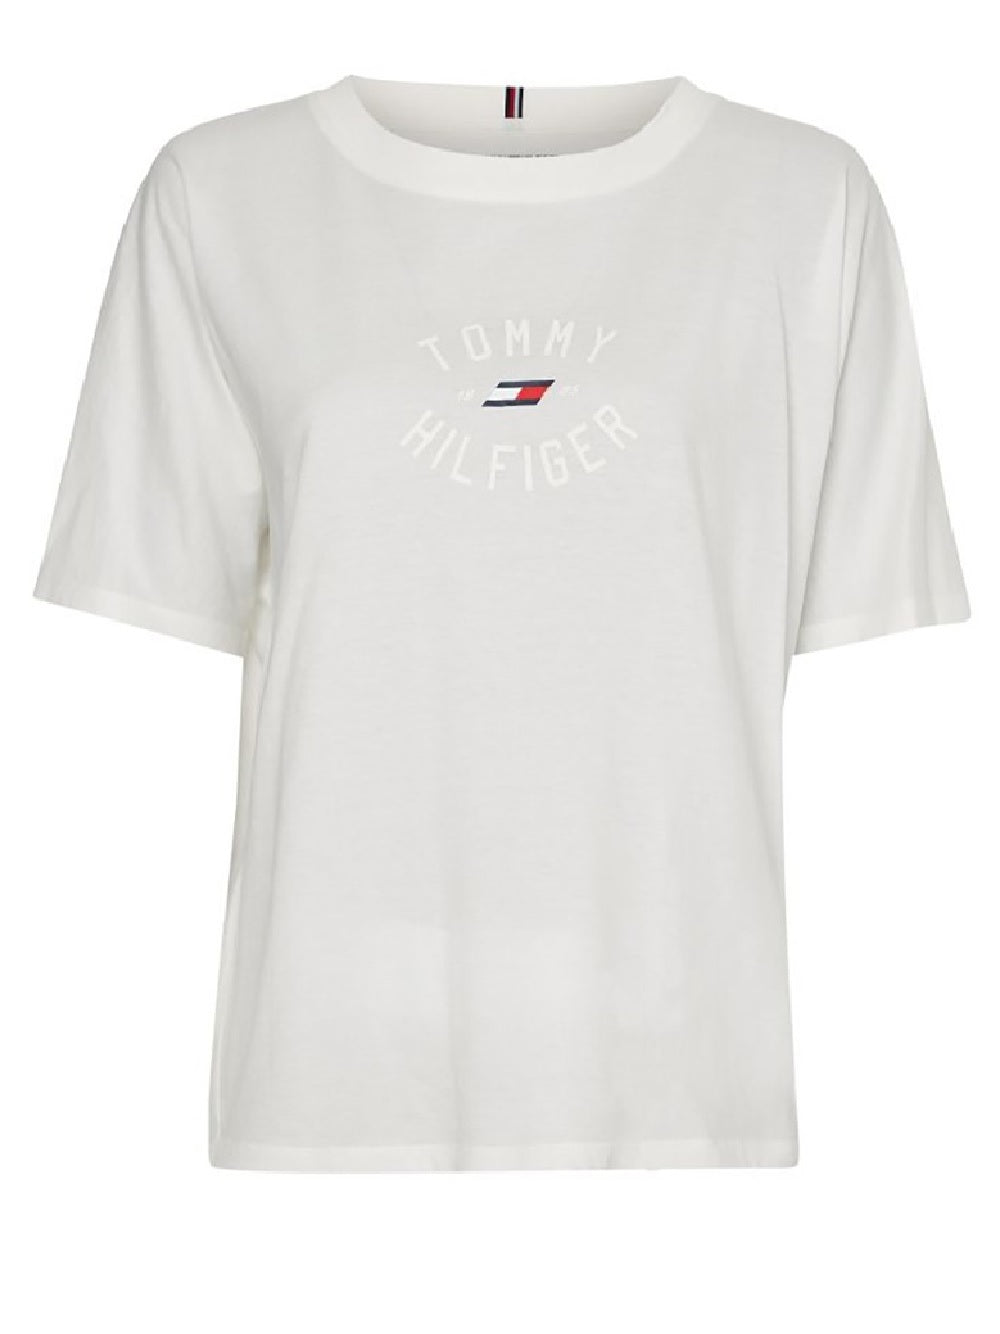 T-shirt Tommy Hilfiger modello S10S101474 stampa con logo sulla parte frontale